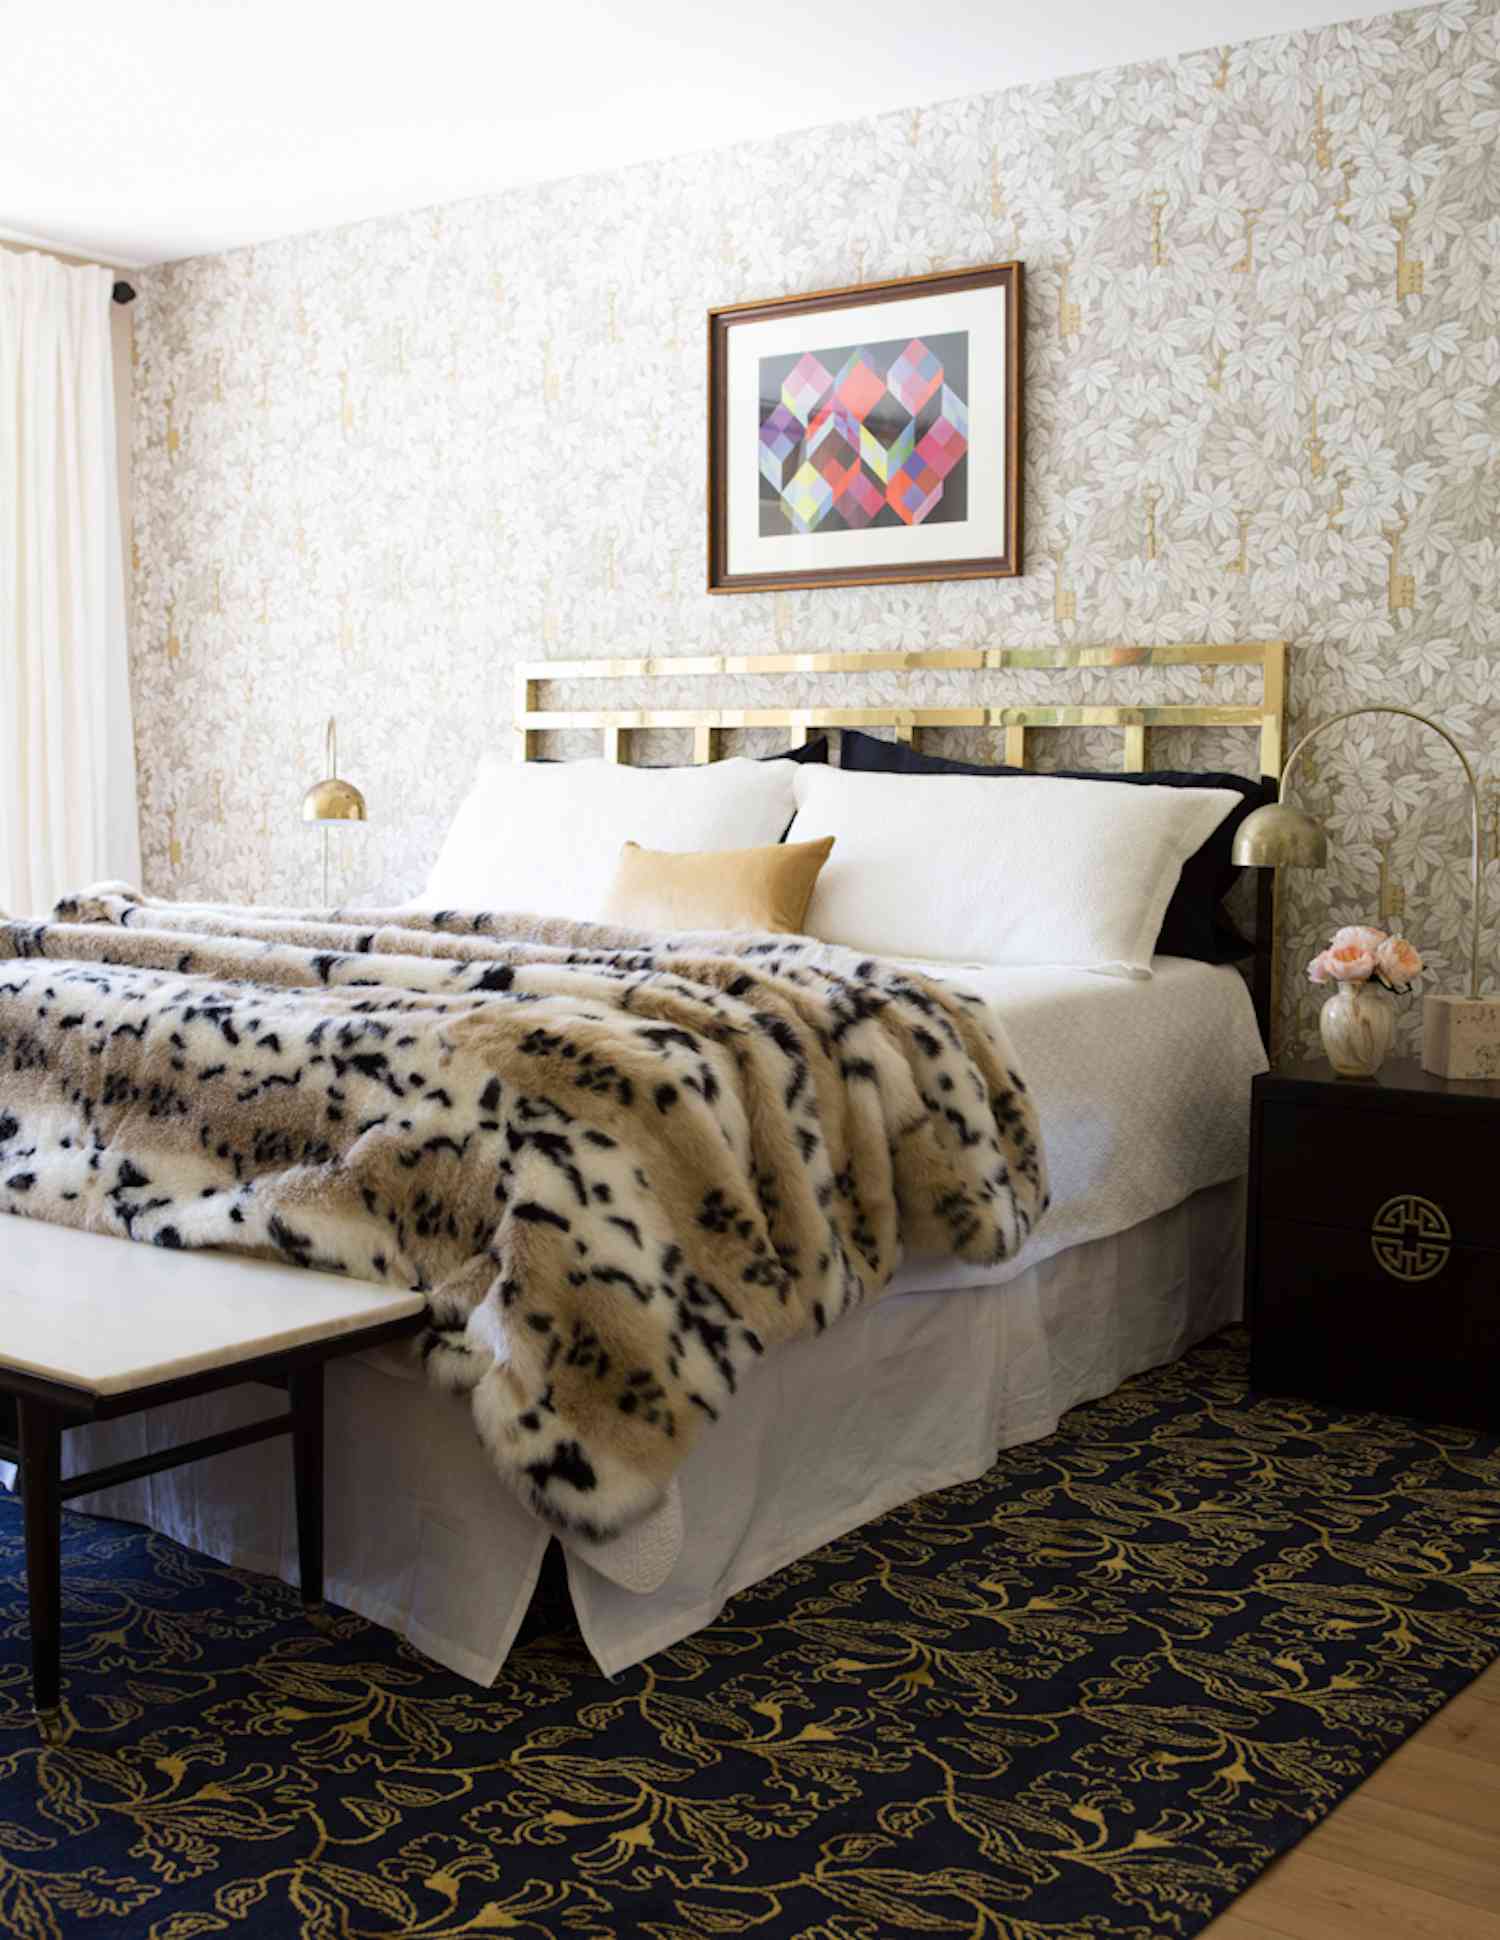 dormitorio moderno con manta de piel con estampado de leopardo, cabecero dorado, toques tostados y beige, glam